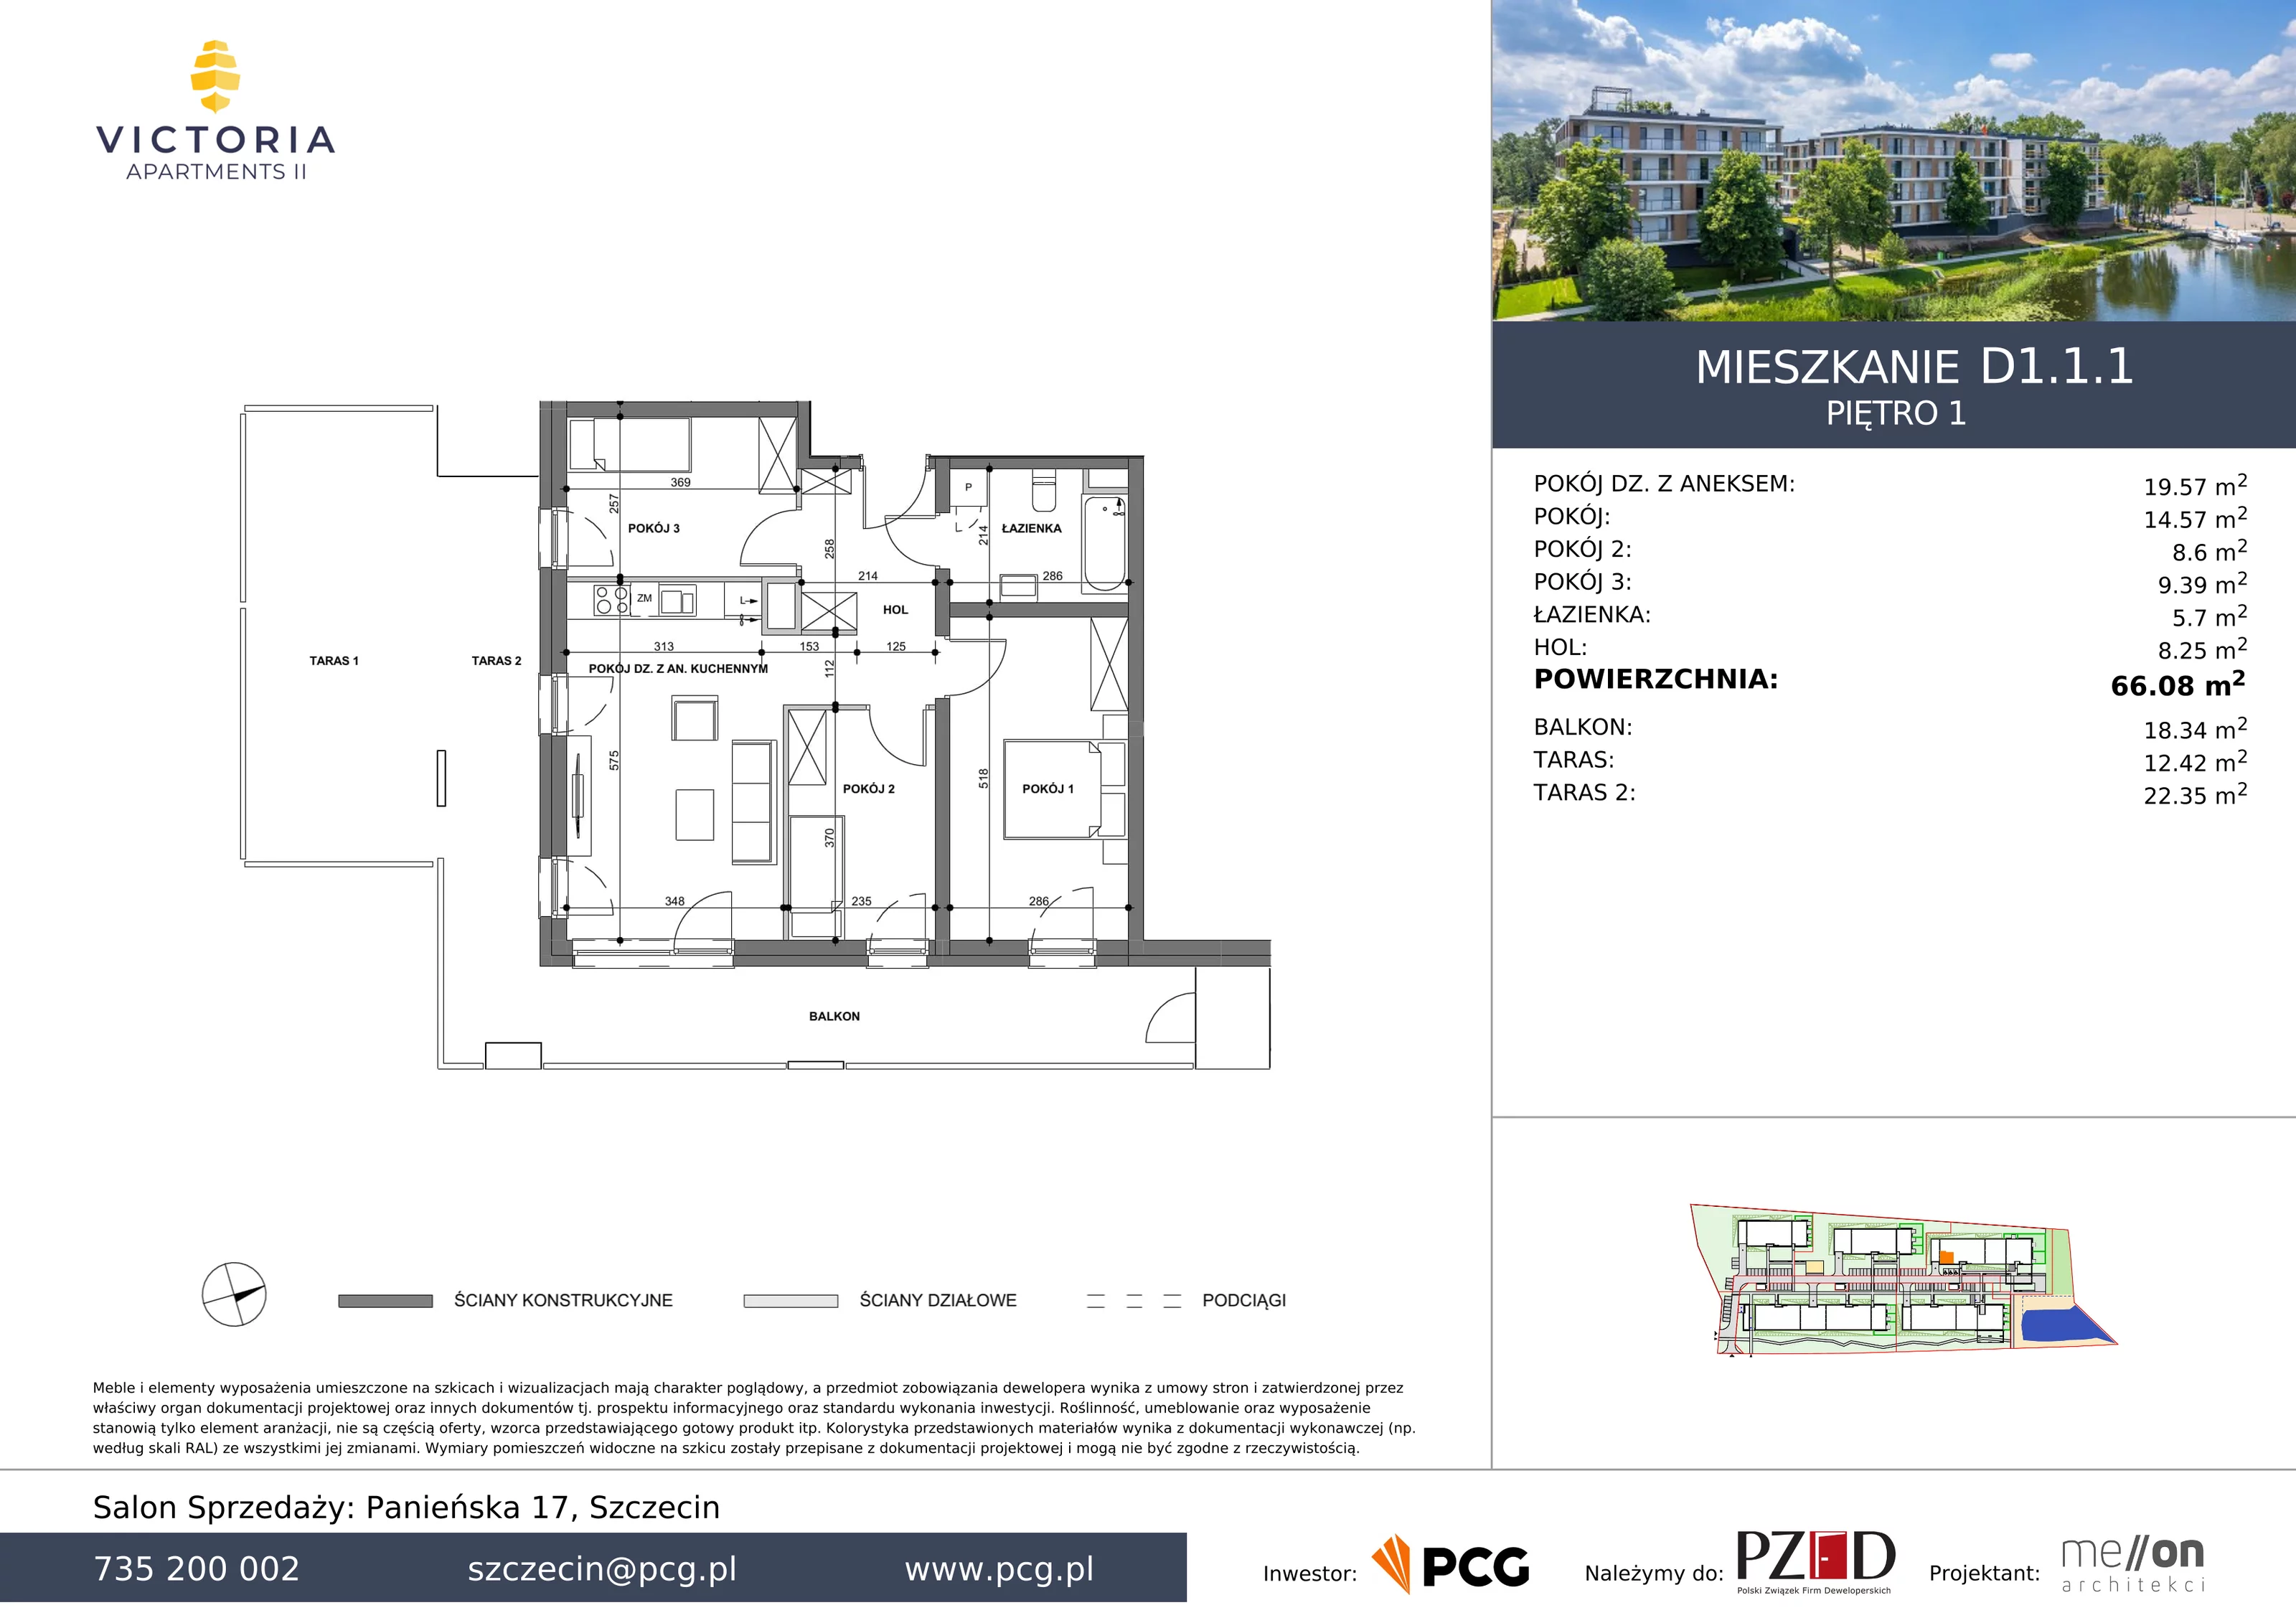 Apartament 66,08 m², piętro 1, oferta nr D1.1.1, Victoria Apartments II, Szczecin, Prawobrzeże, Dąbie, ul. Przestrzenna